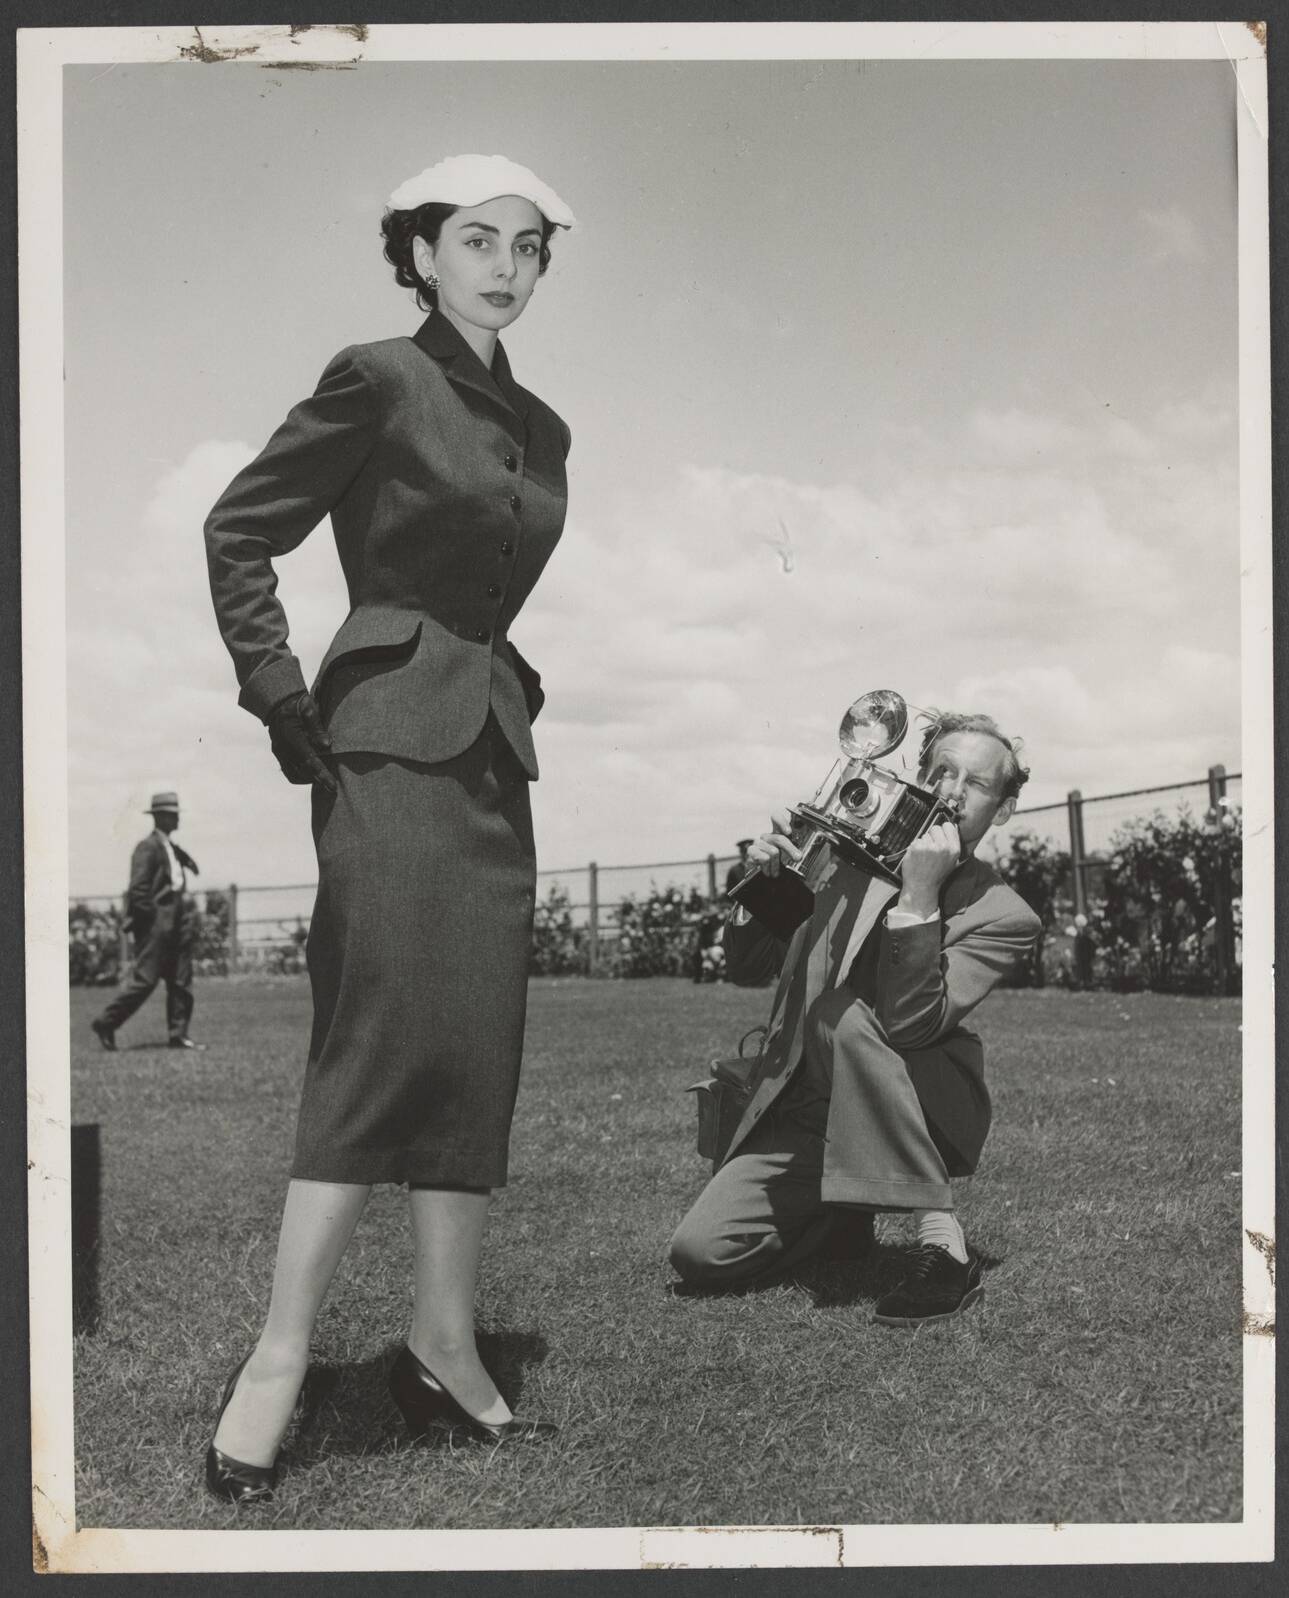 Melbourne Cup fashion: Shorts allowed at Flemington Races, Birdcage, Dress  Code changes through history, Jean Shrimpton